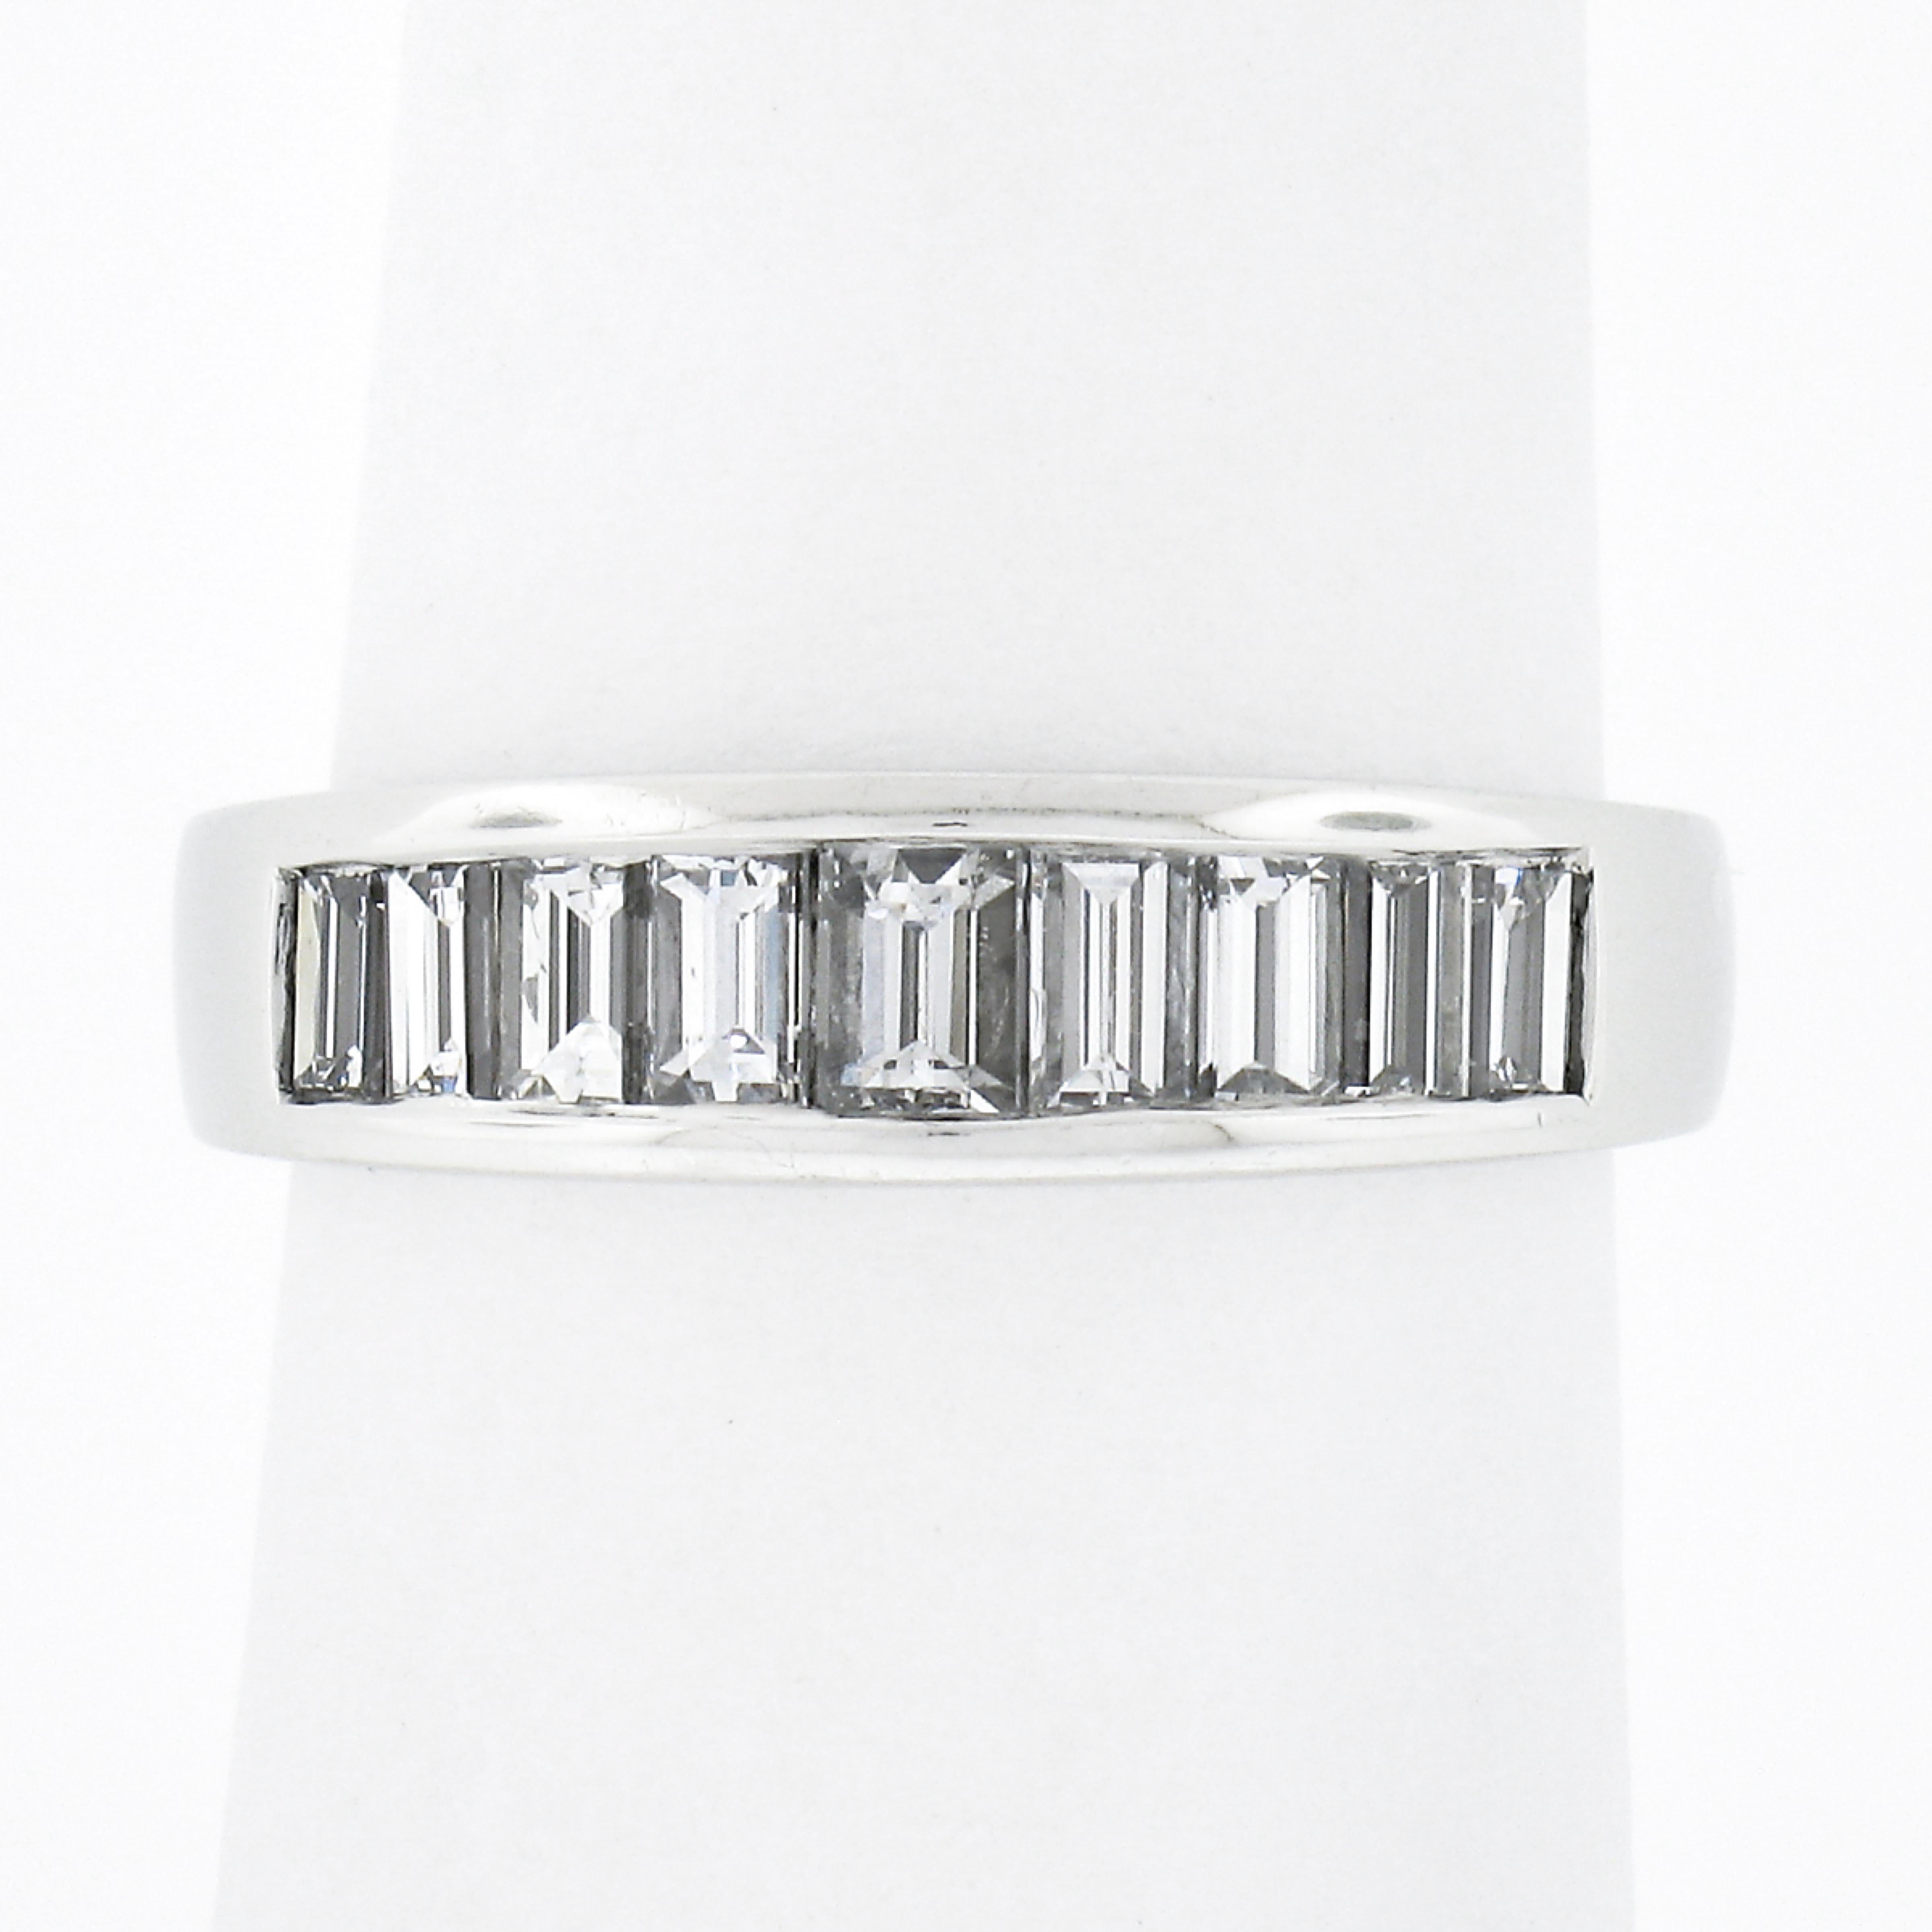 Cette superbe bague à anneau est fabriquée en platine massif et comporte 9 diamants baguette droits soigneusement sertis en canal sur sa partie supérieure. Les diamants totalisent exactement 1,02 carats et sont incroyablement brillants avec une